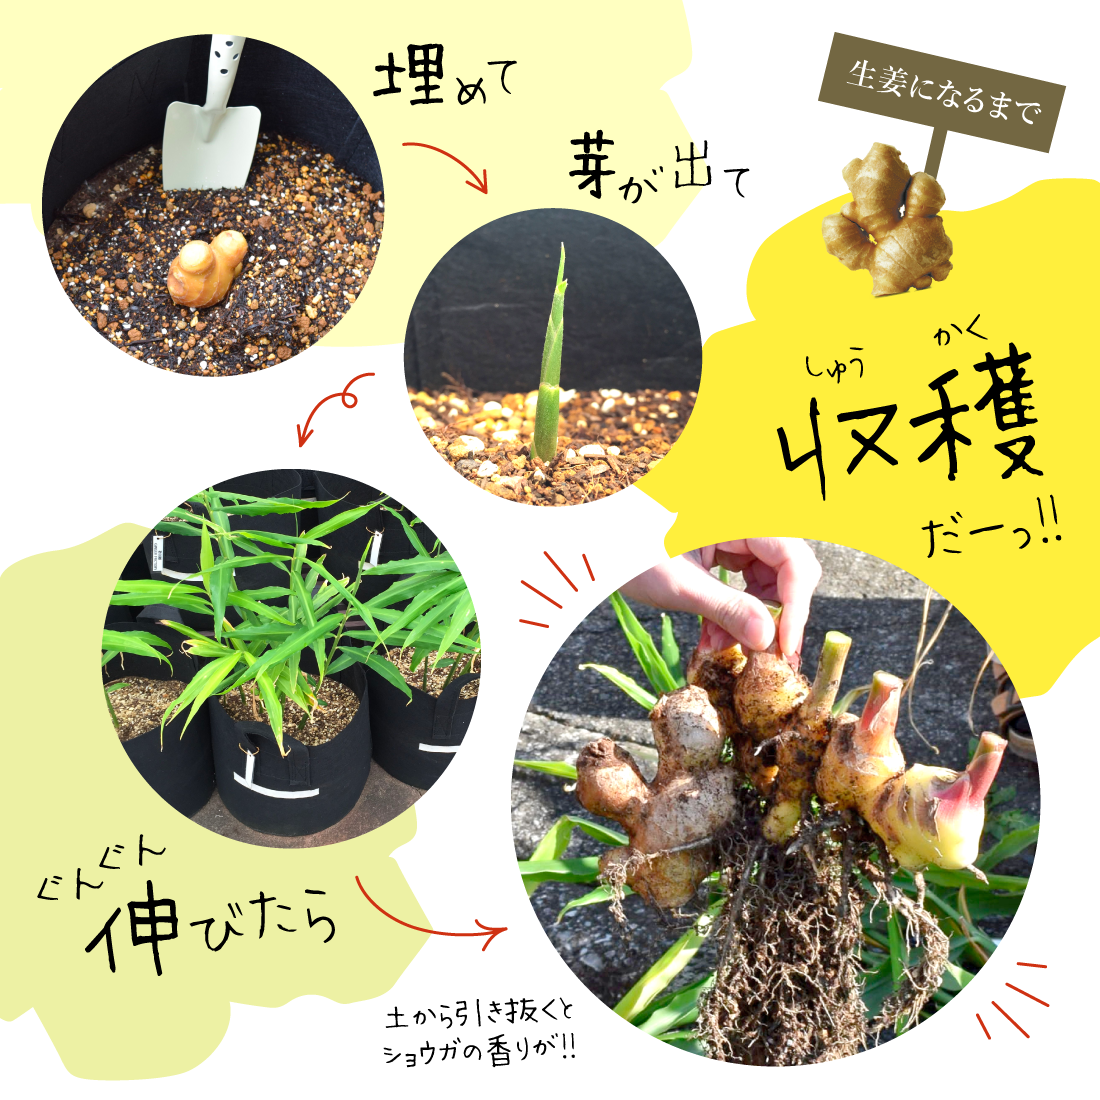 囲い生姜 無肥料 農薬栽培期間中不使用 露地栽培 熊本県産 4kg